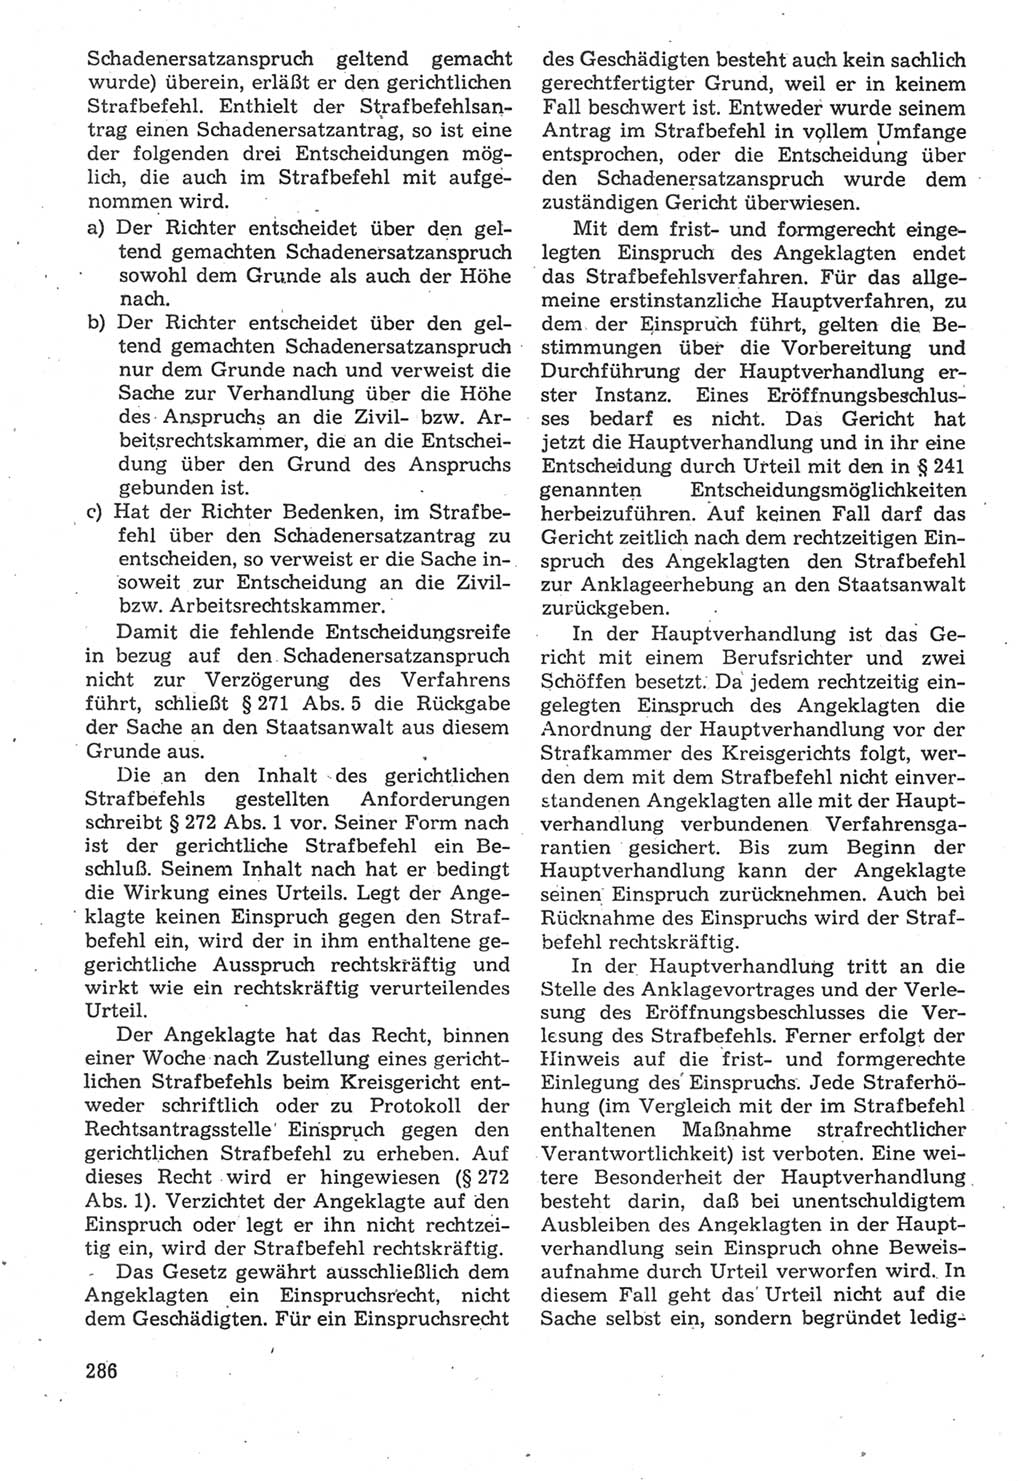 Strafverfahrensrecht [Deutsche Demokratische Republik (DDR)], Lehrbuch 1987, Seite 286 (Strafverf.-R. DDR Lb. 1987, S. 286)